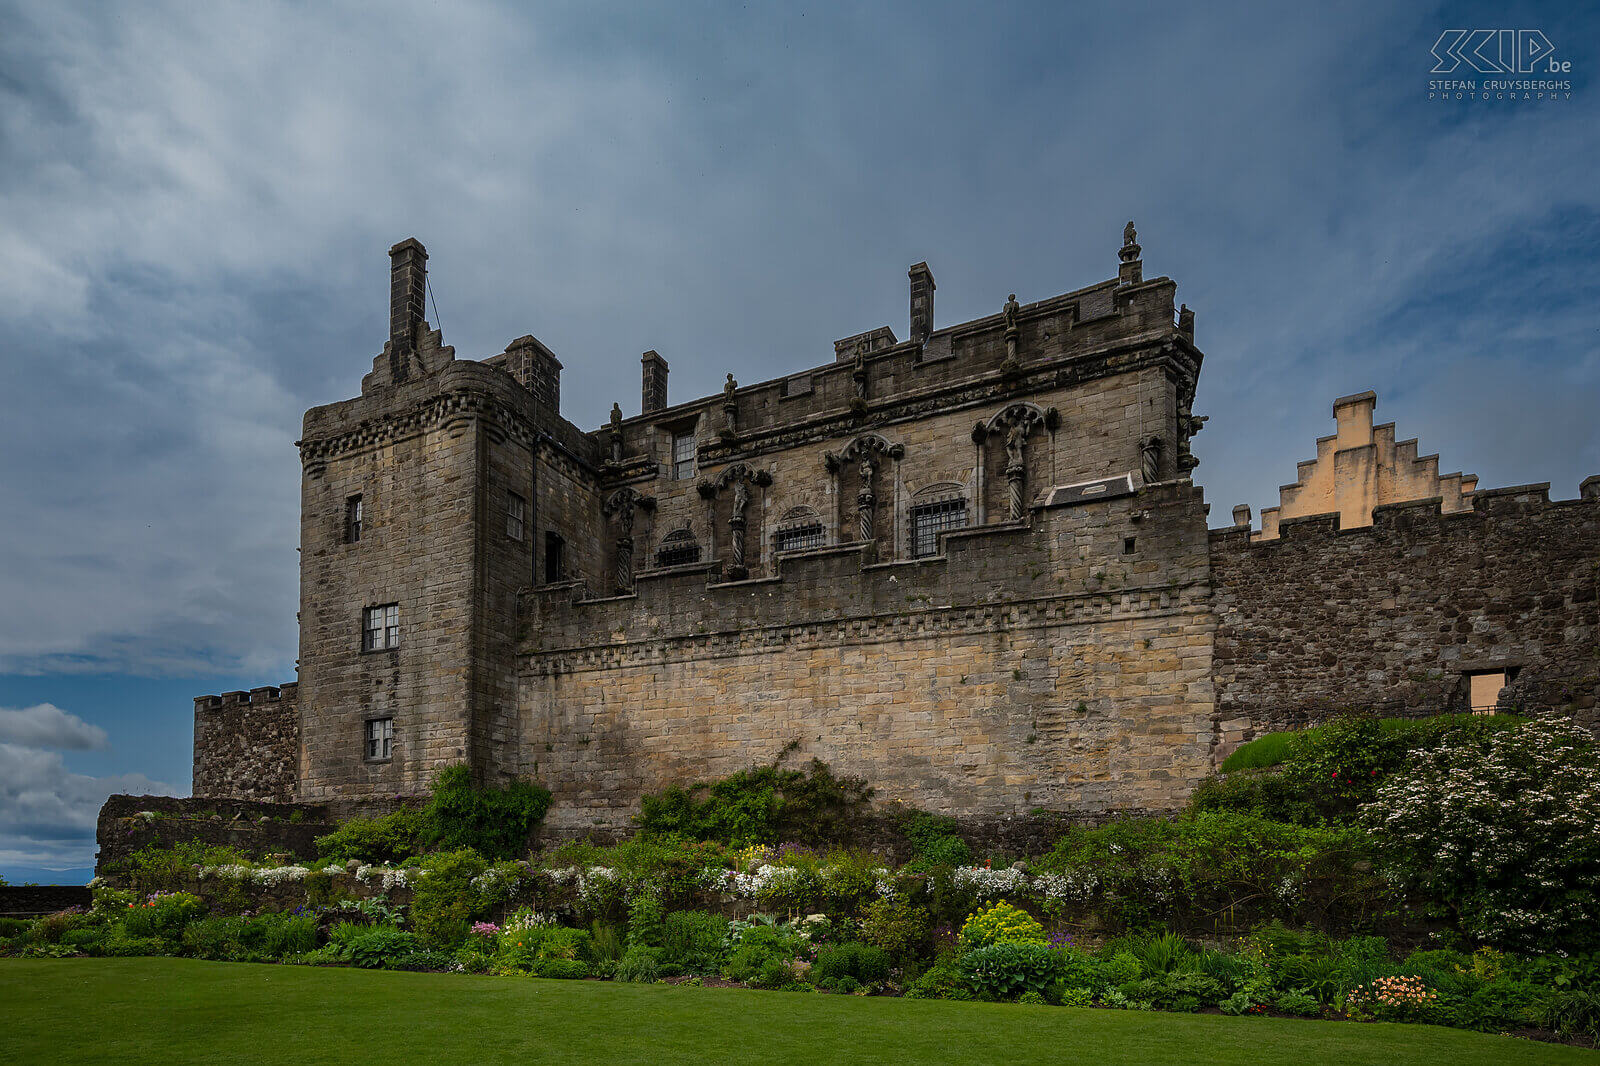 Stirling Castle Boven op een grote vulkanische rots in het stadje Stirling ligt het imposante Stirling Castle. Hier versloeg William Wallace in 1297 het Engelse leger. Hij gaf daarmee de Schotten het idee een afzonderlijke natie te zijn. Stefan Cruysberghs